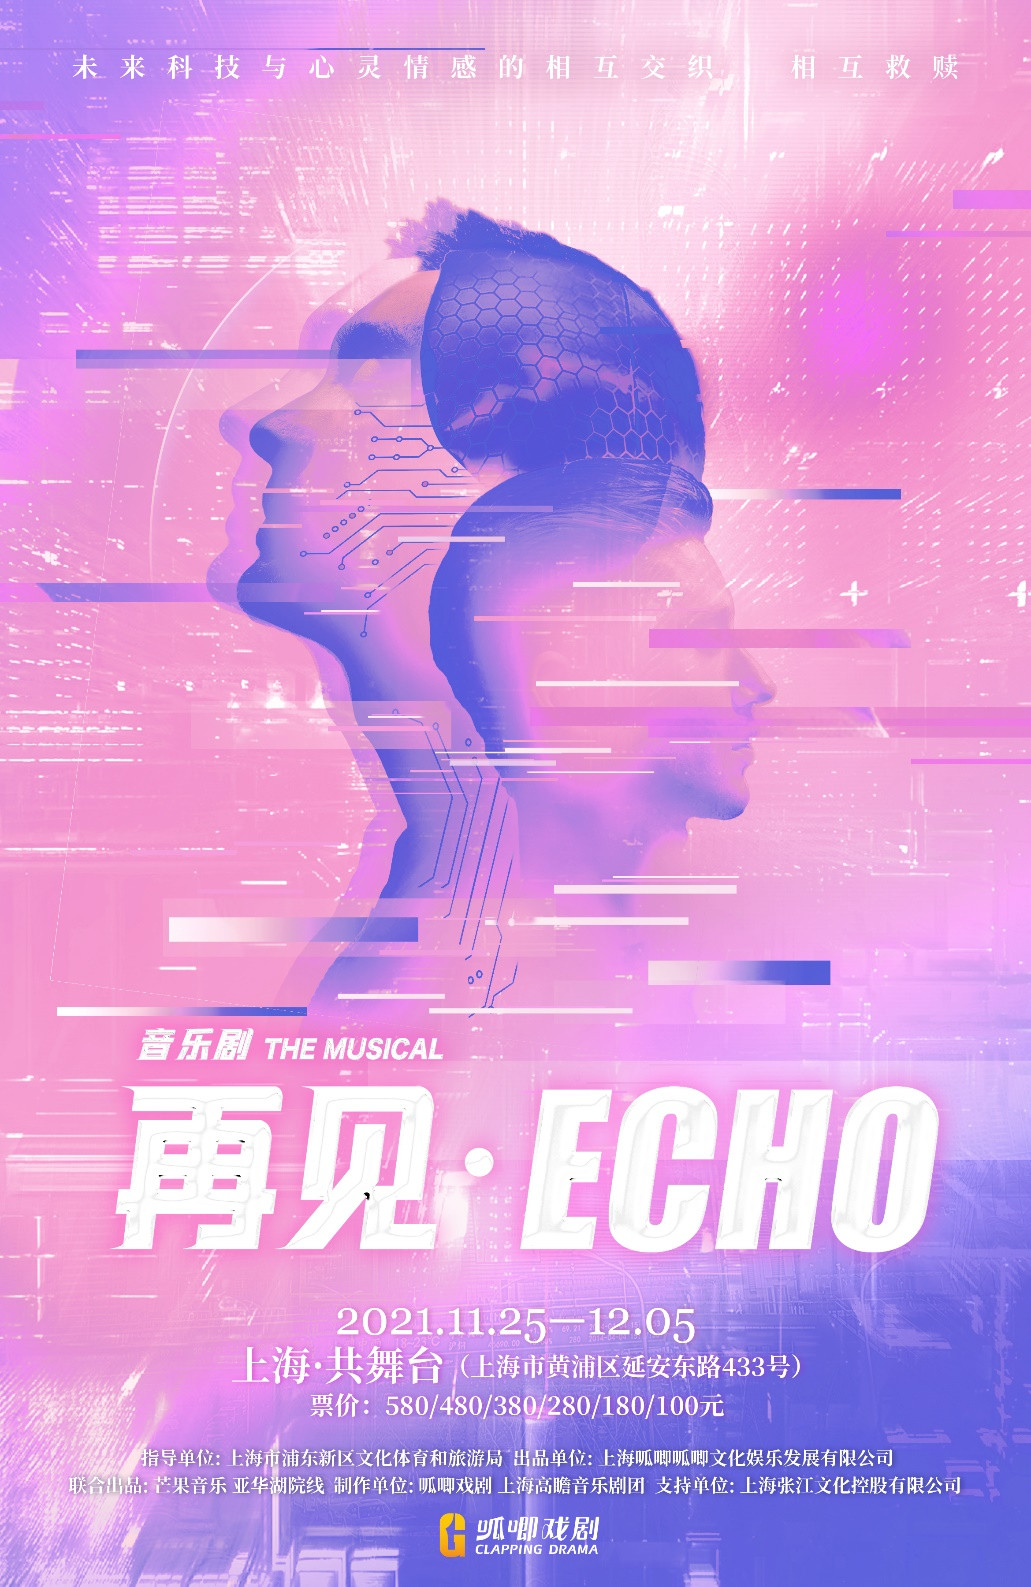 音乐剧《再见Echo》上海站时间、场馆、门票、剧情简介